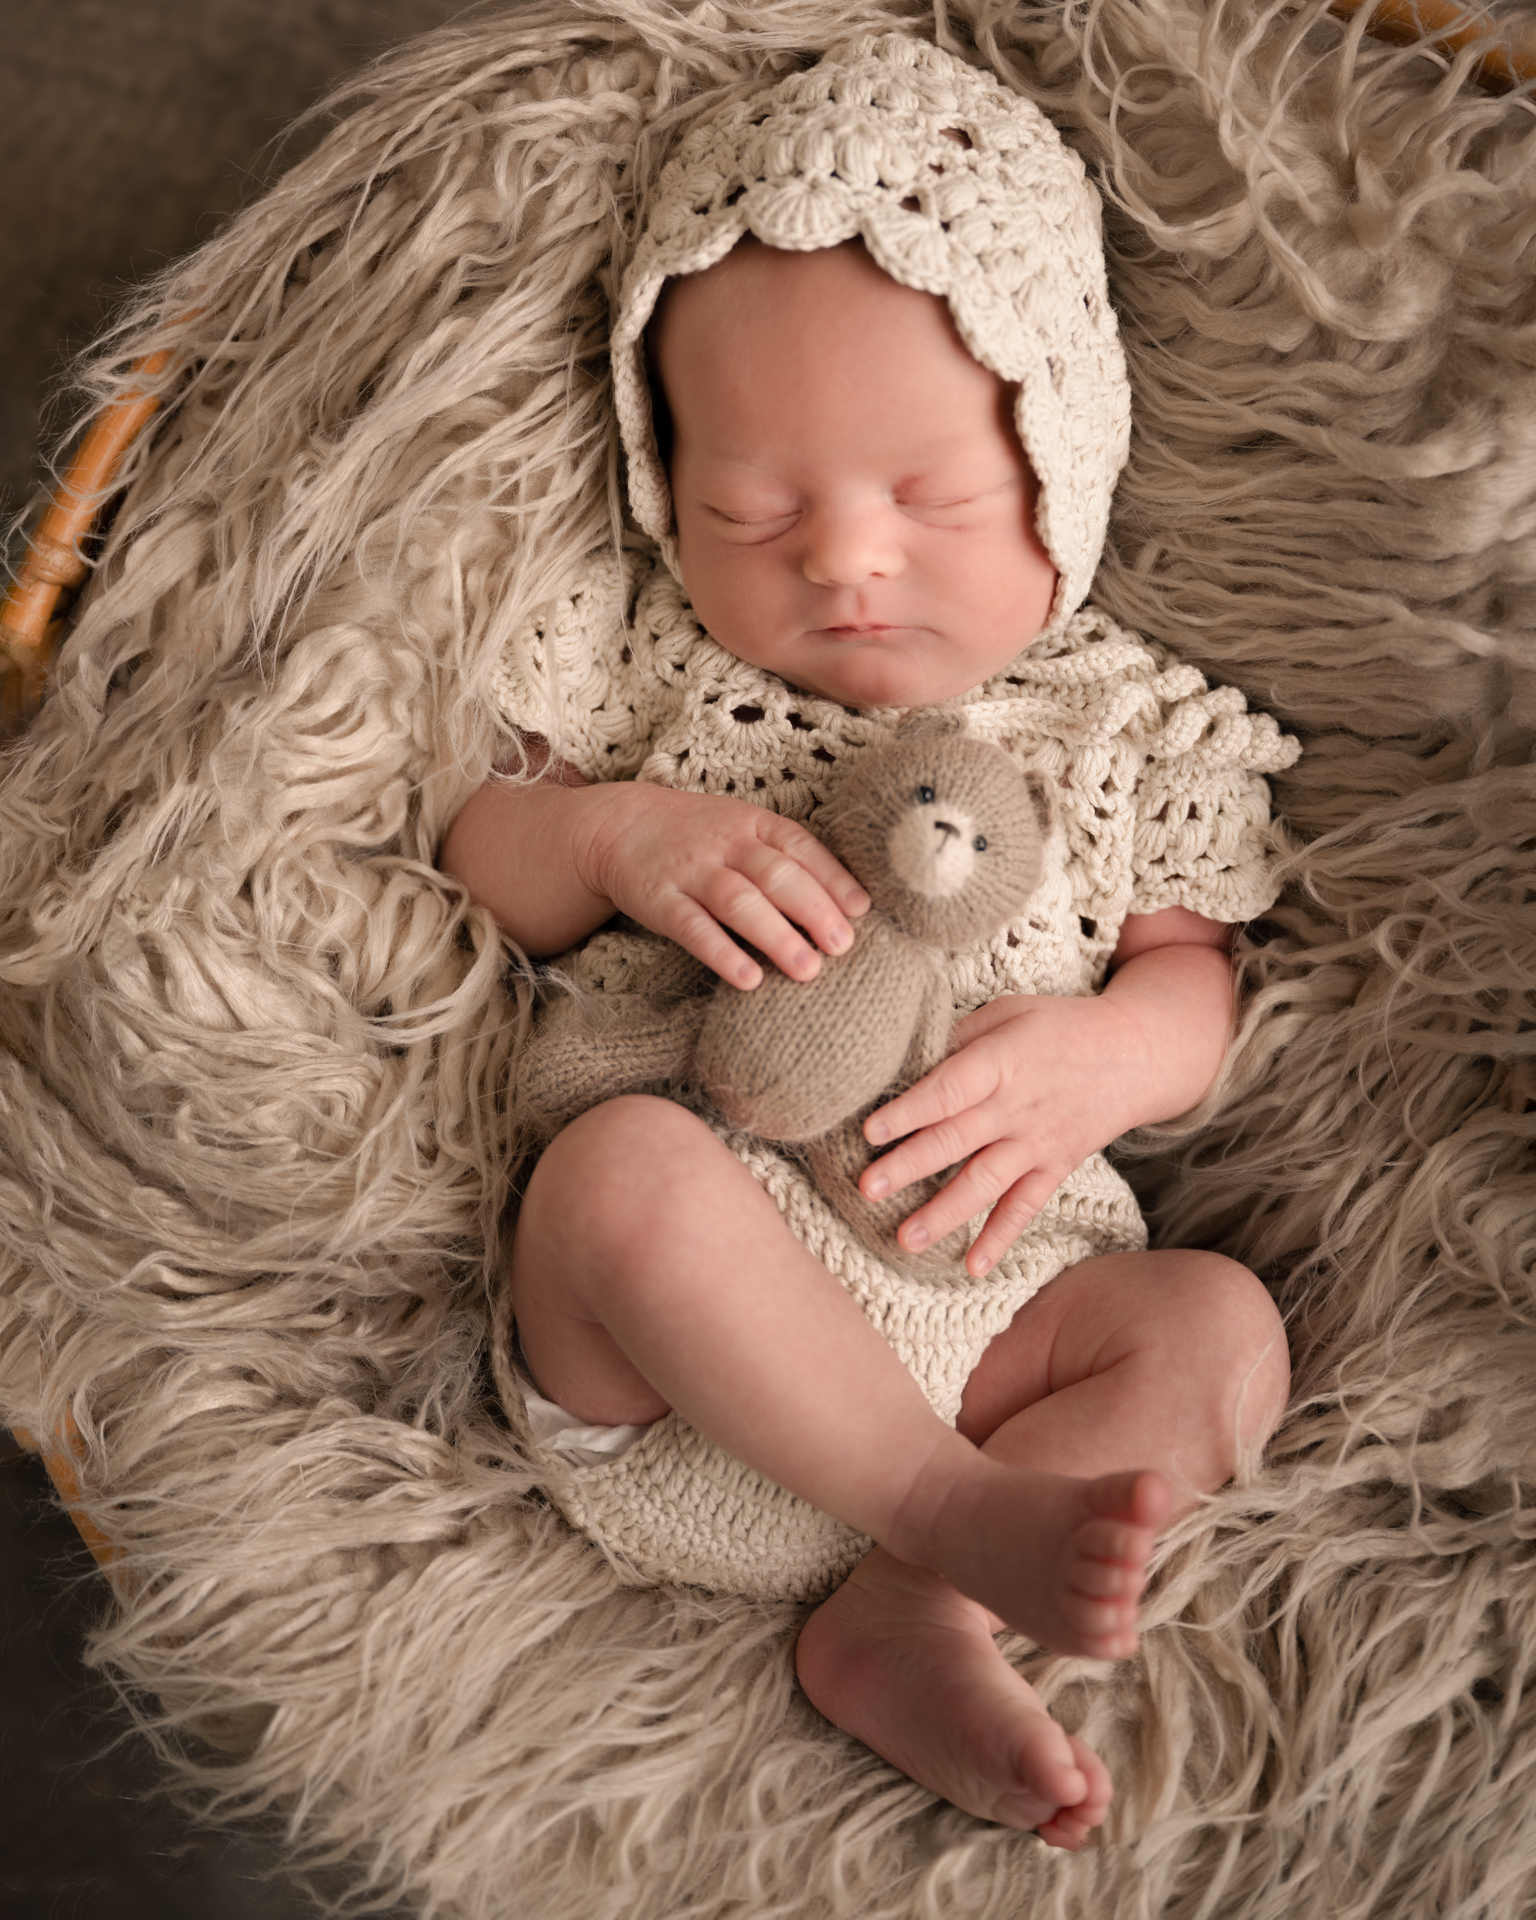 sovende baby med bamse i hånden fotografert med jordfarger